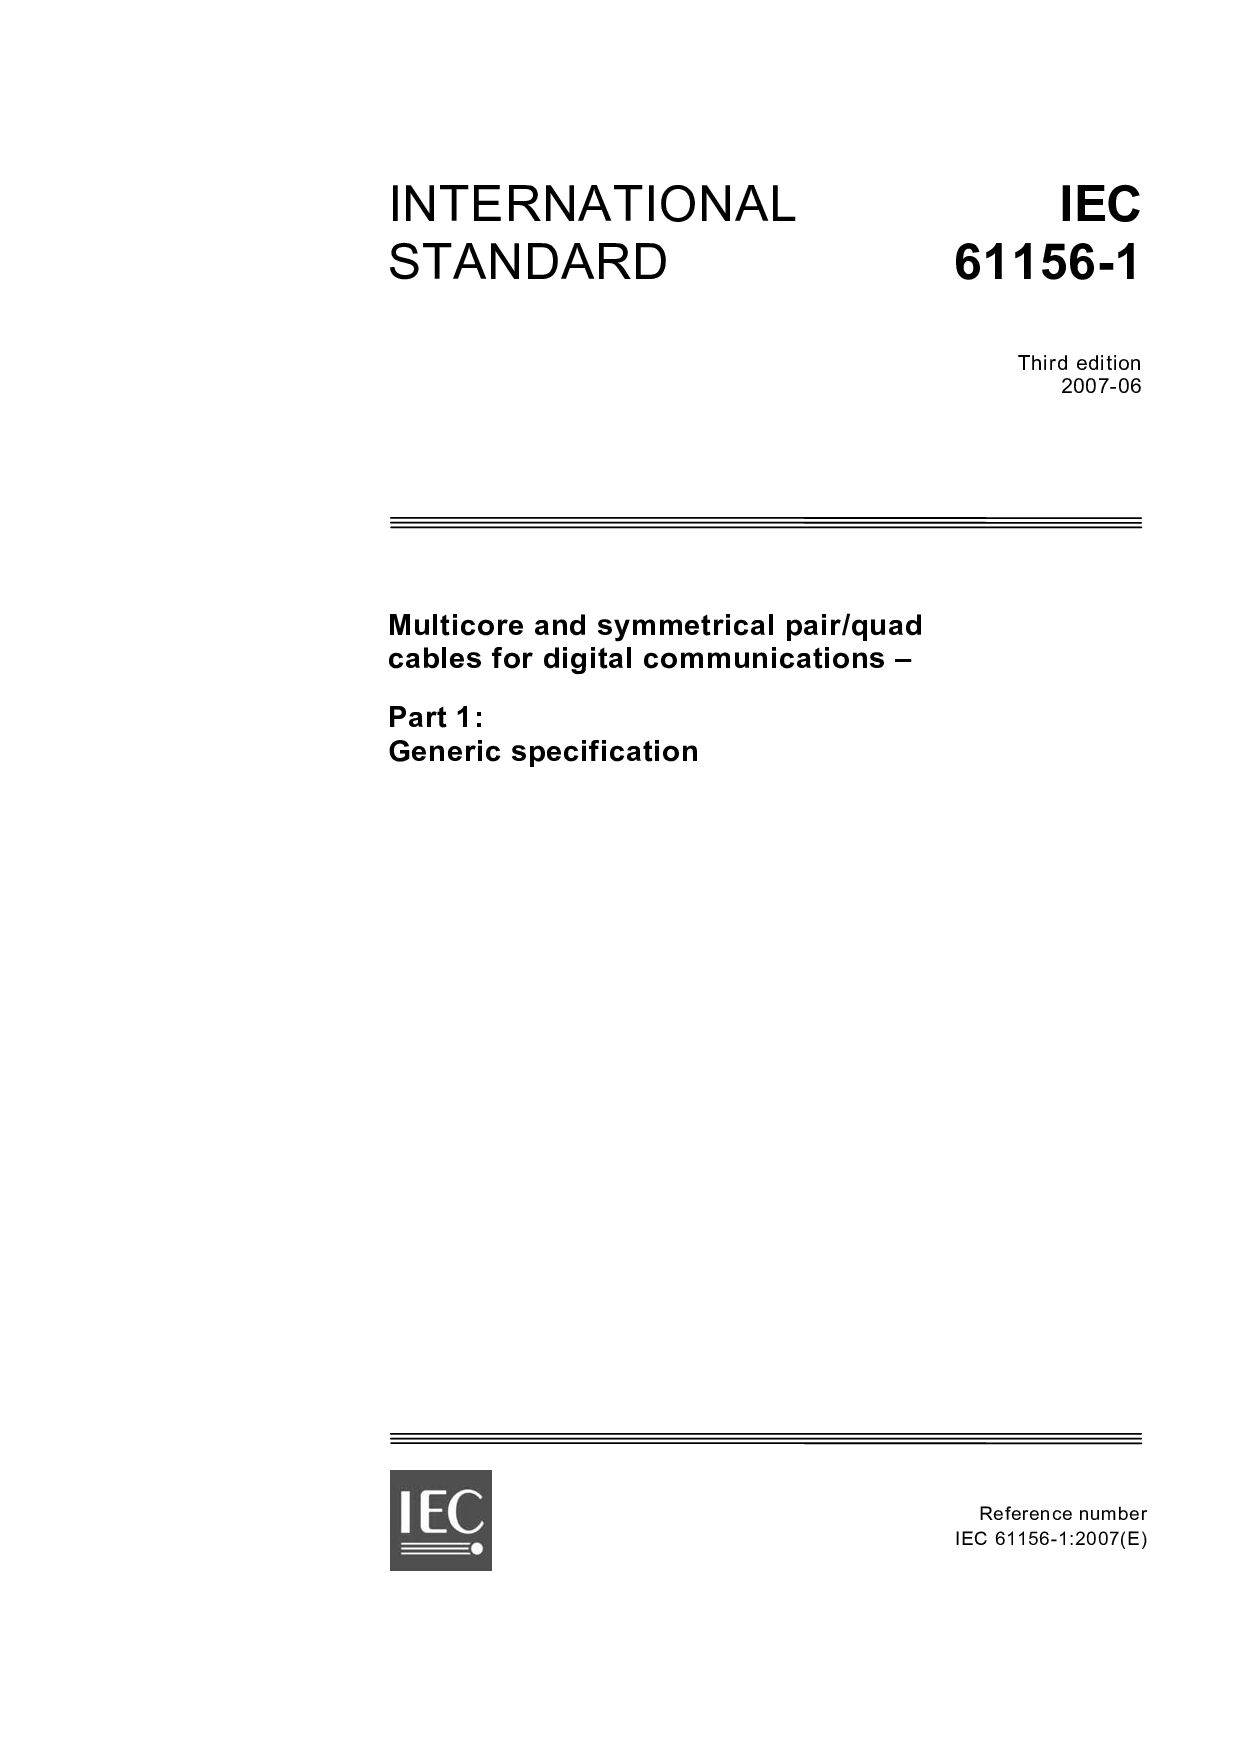 IEC 61156-1:2007